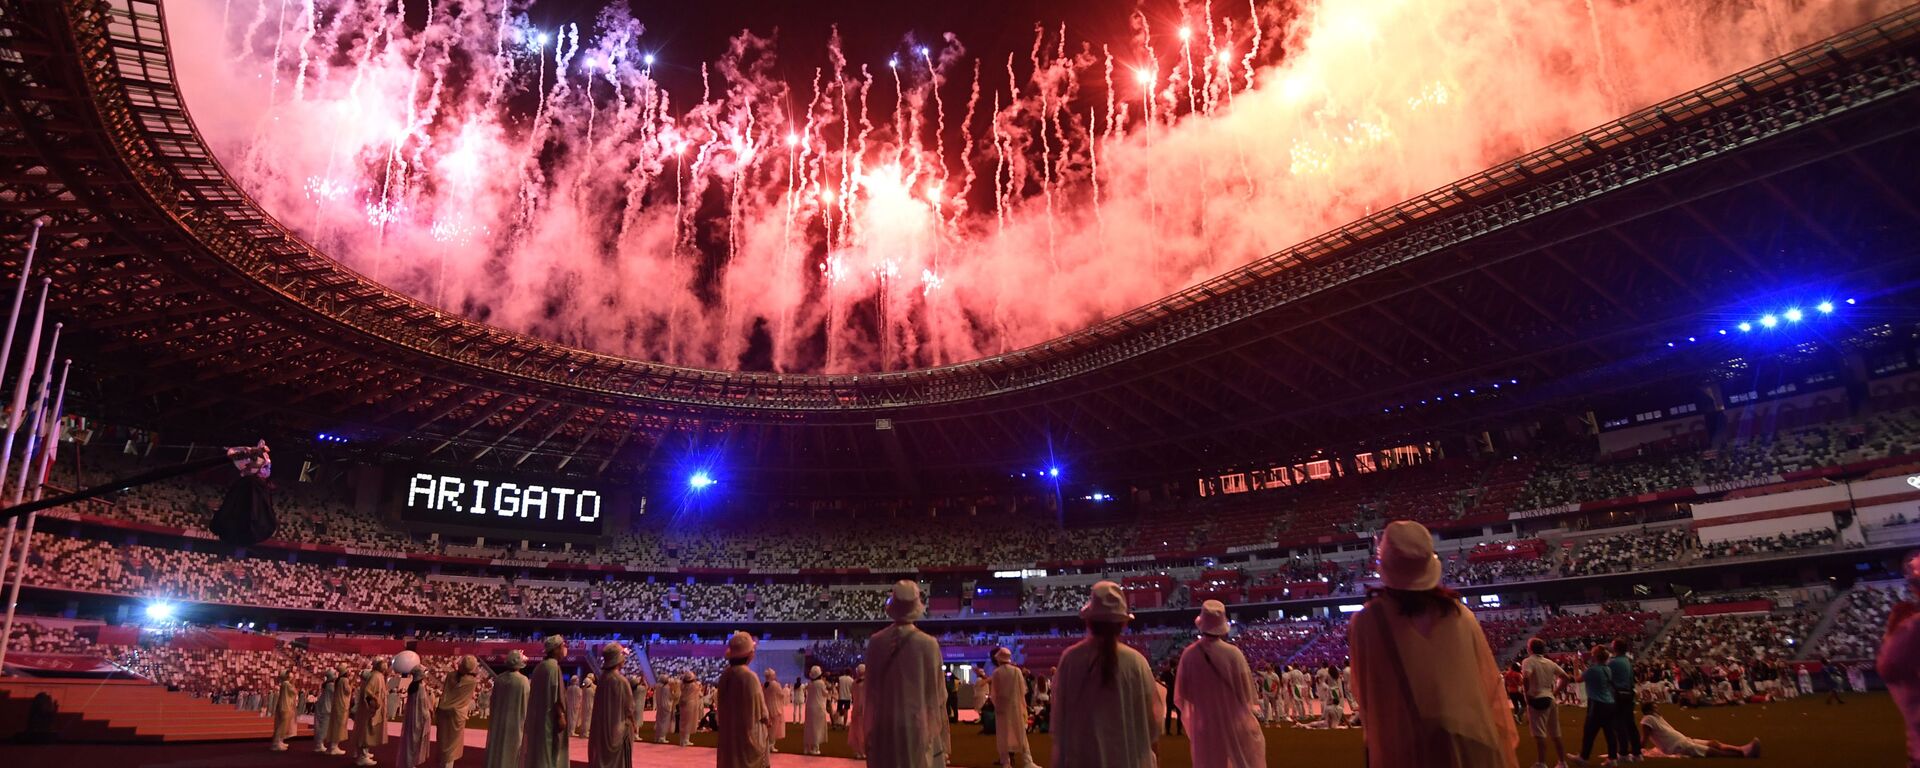 Салют на торжественной церемонии закрытия XXXII летних Олимпийских игр в Токио на Национальном олимпийском стадионе  - Sputnik Узбекистан, 1920, 09.08.2021